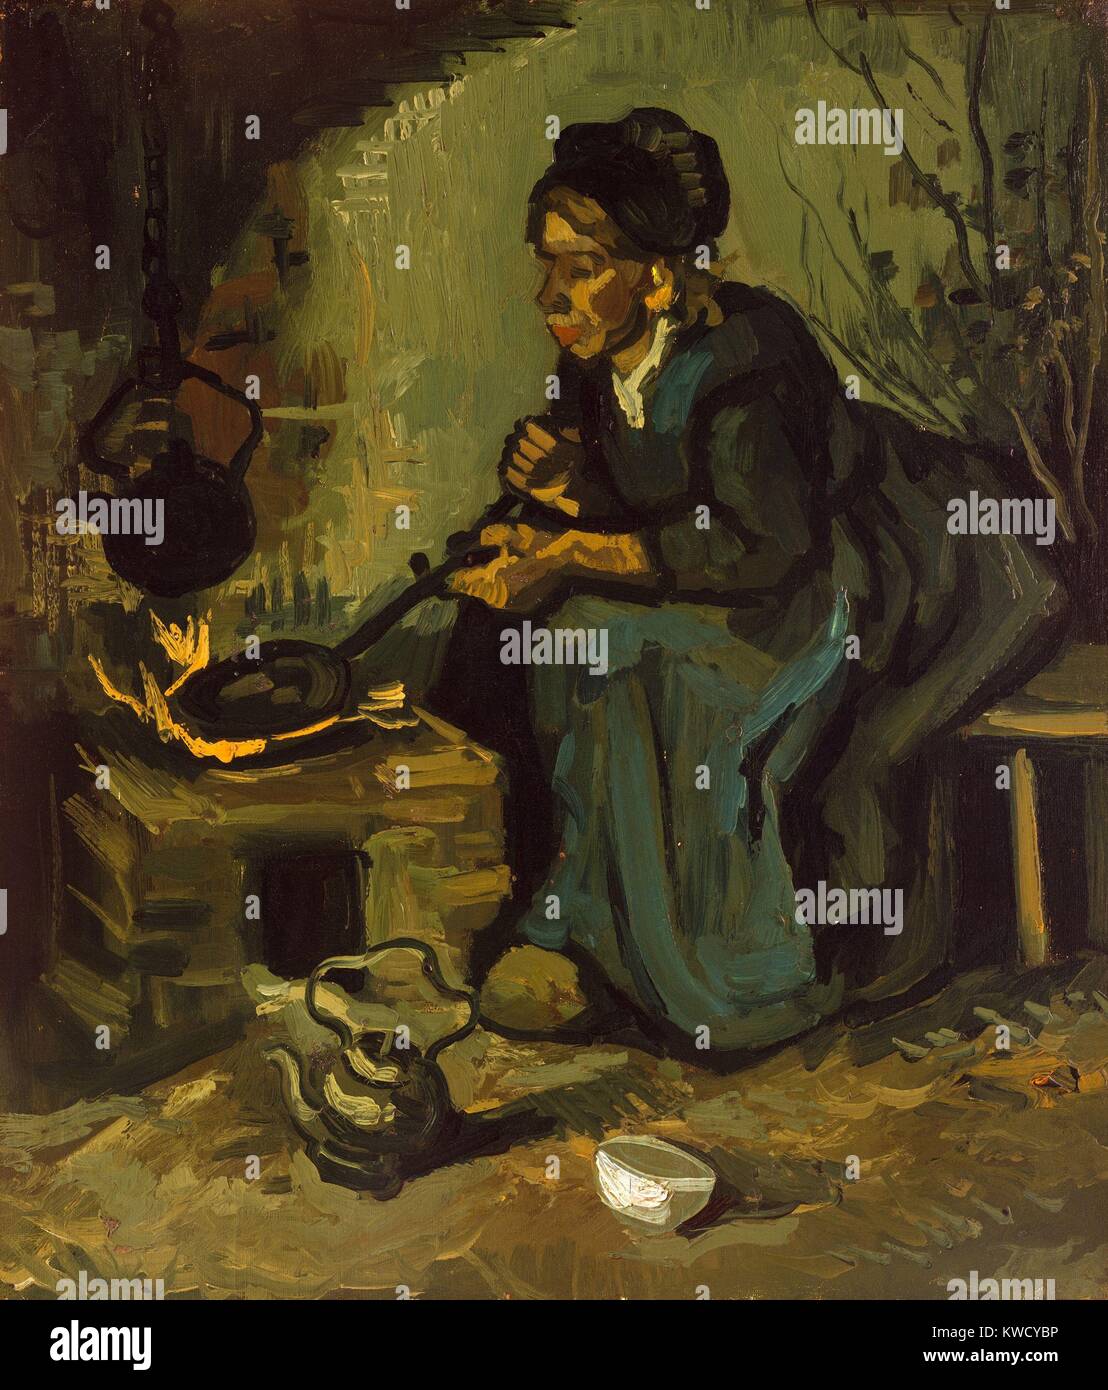 La cuisine paysanne par une cheminée, par Vincent Van Gogh, 1885, peinture postimpressionniste néerlandais. Ce début de l'huile sur toile a été peinte 4 ans après il a commencé à peindre en 1881 BSLOC  2017 (5 45) Banque D'Images